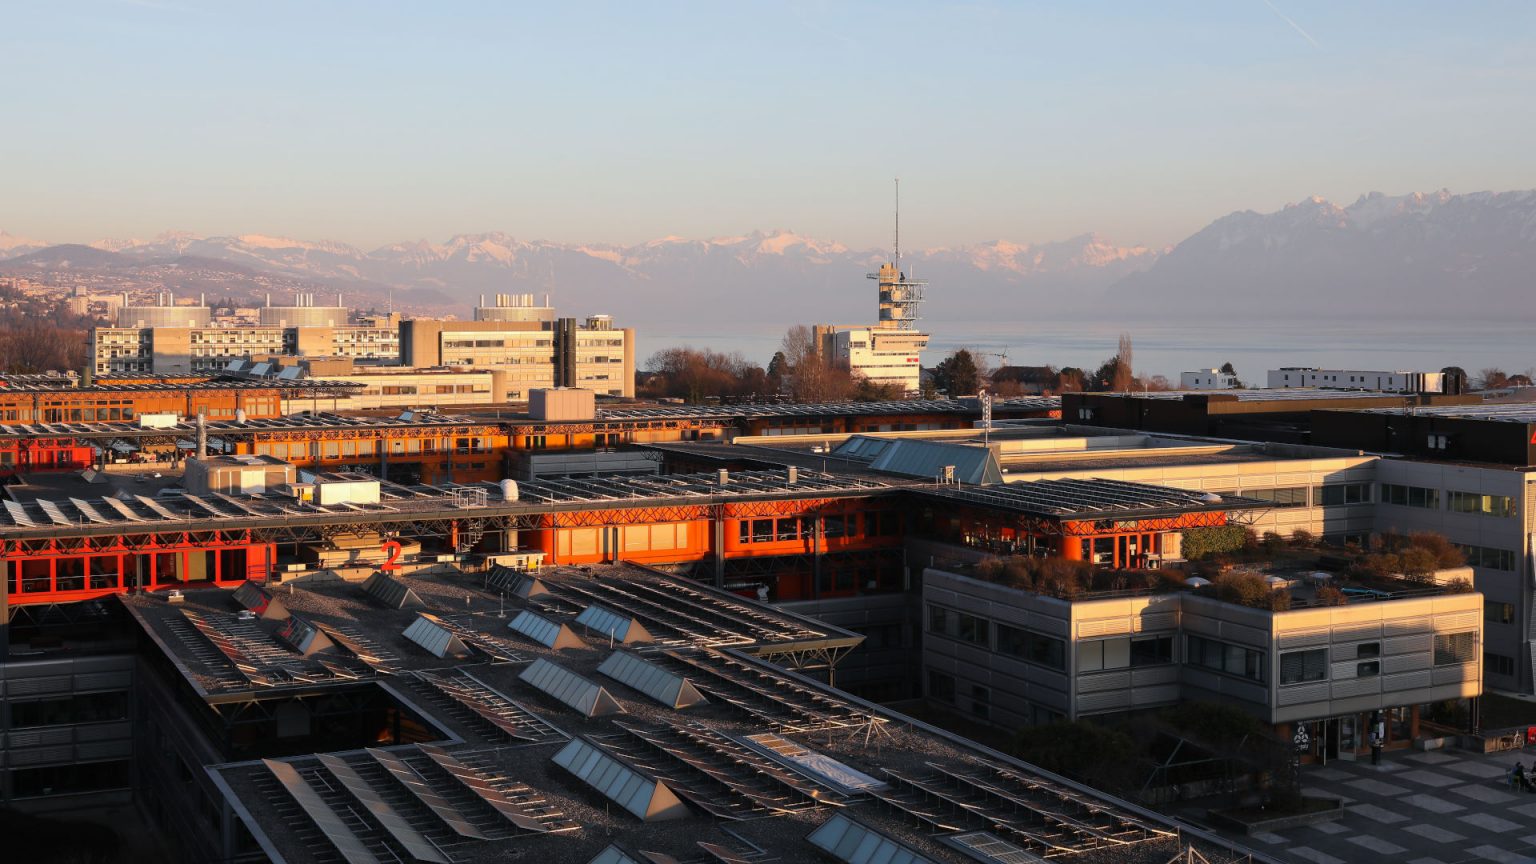 EPFL Lausanne buildings